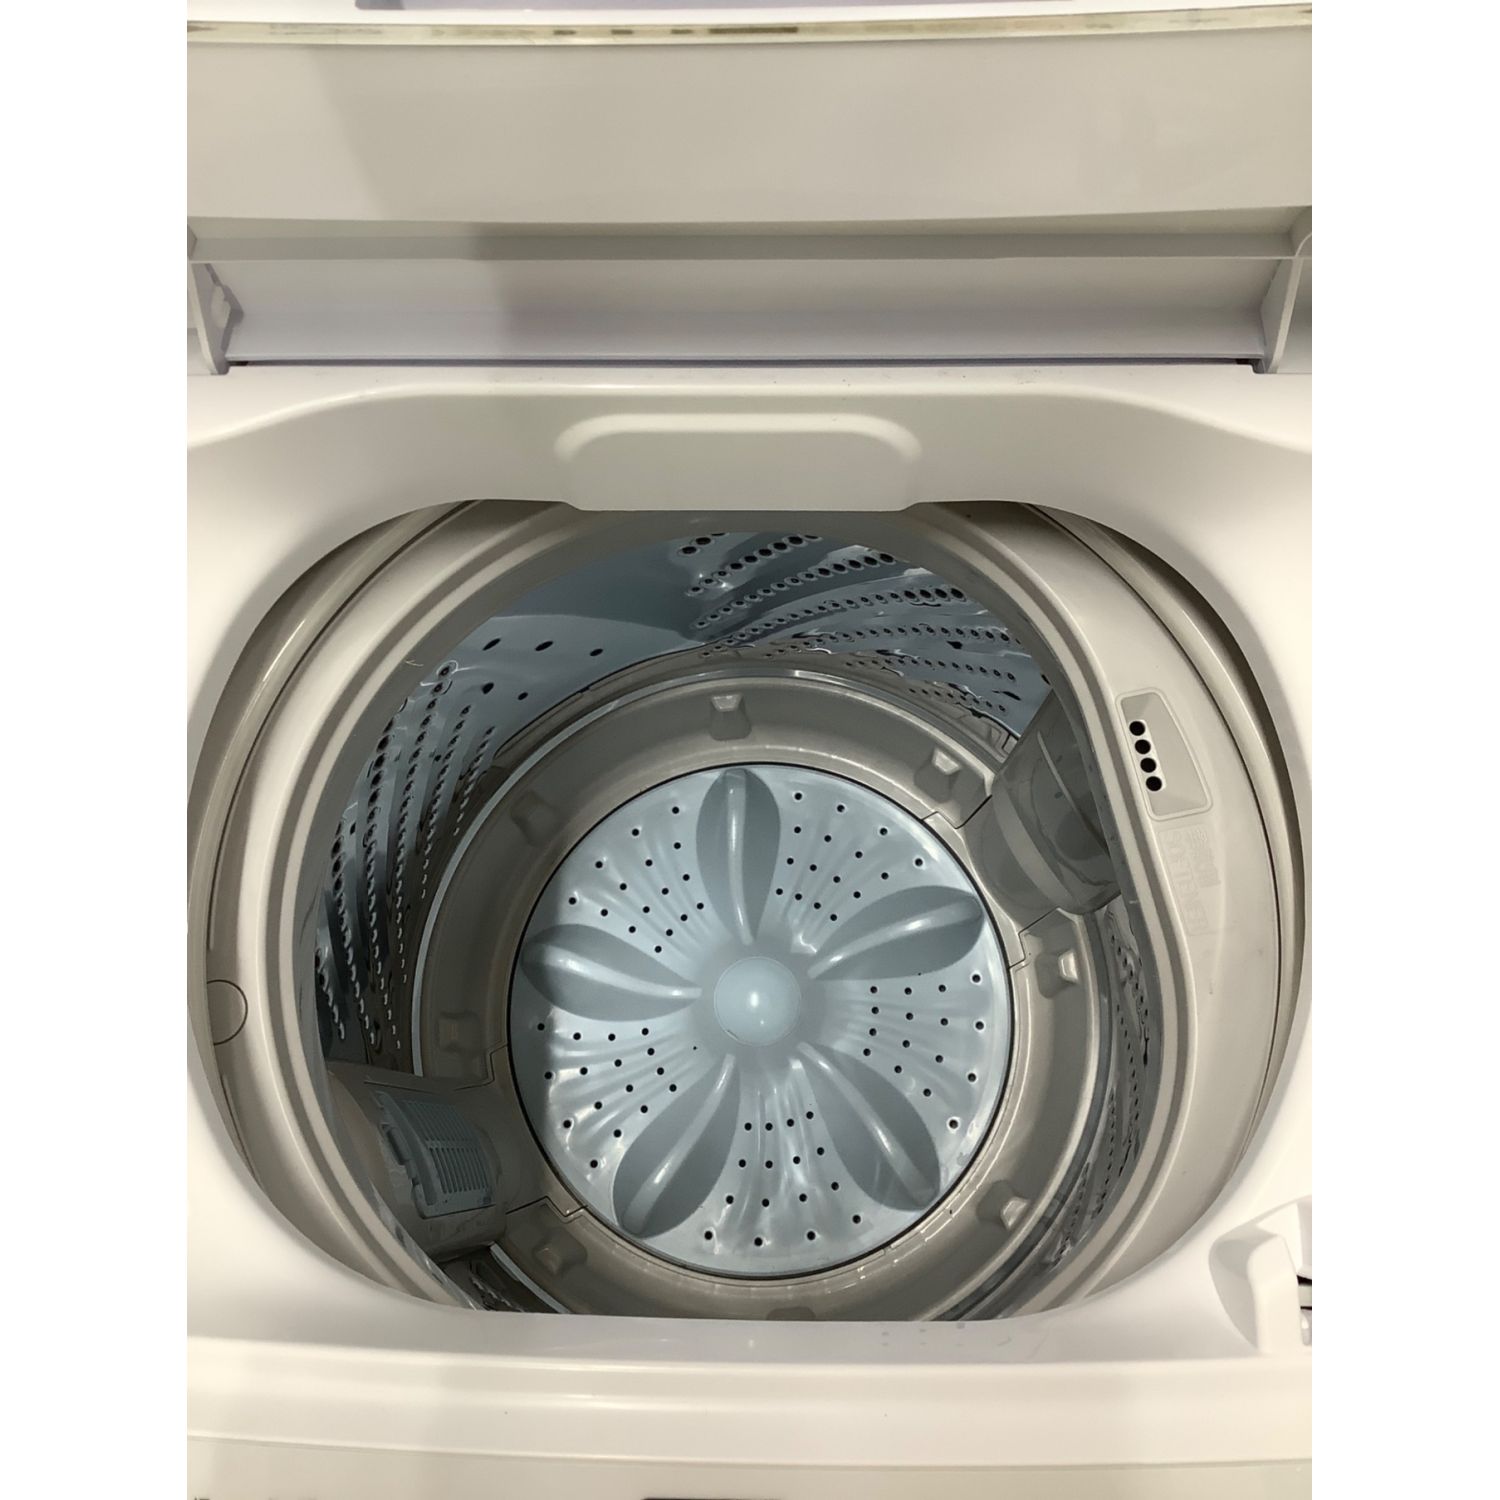 【日本売上】送料込 中古美品 Hisense 5.5kg 洗濯機 梱包・発送たのメル便で安心 洗濯機